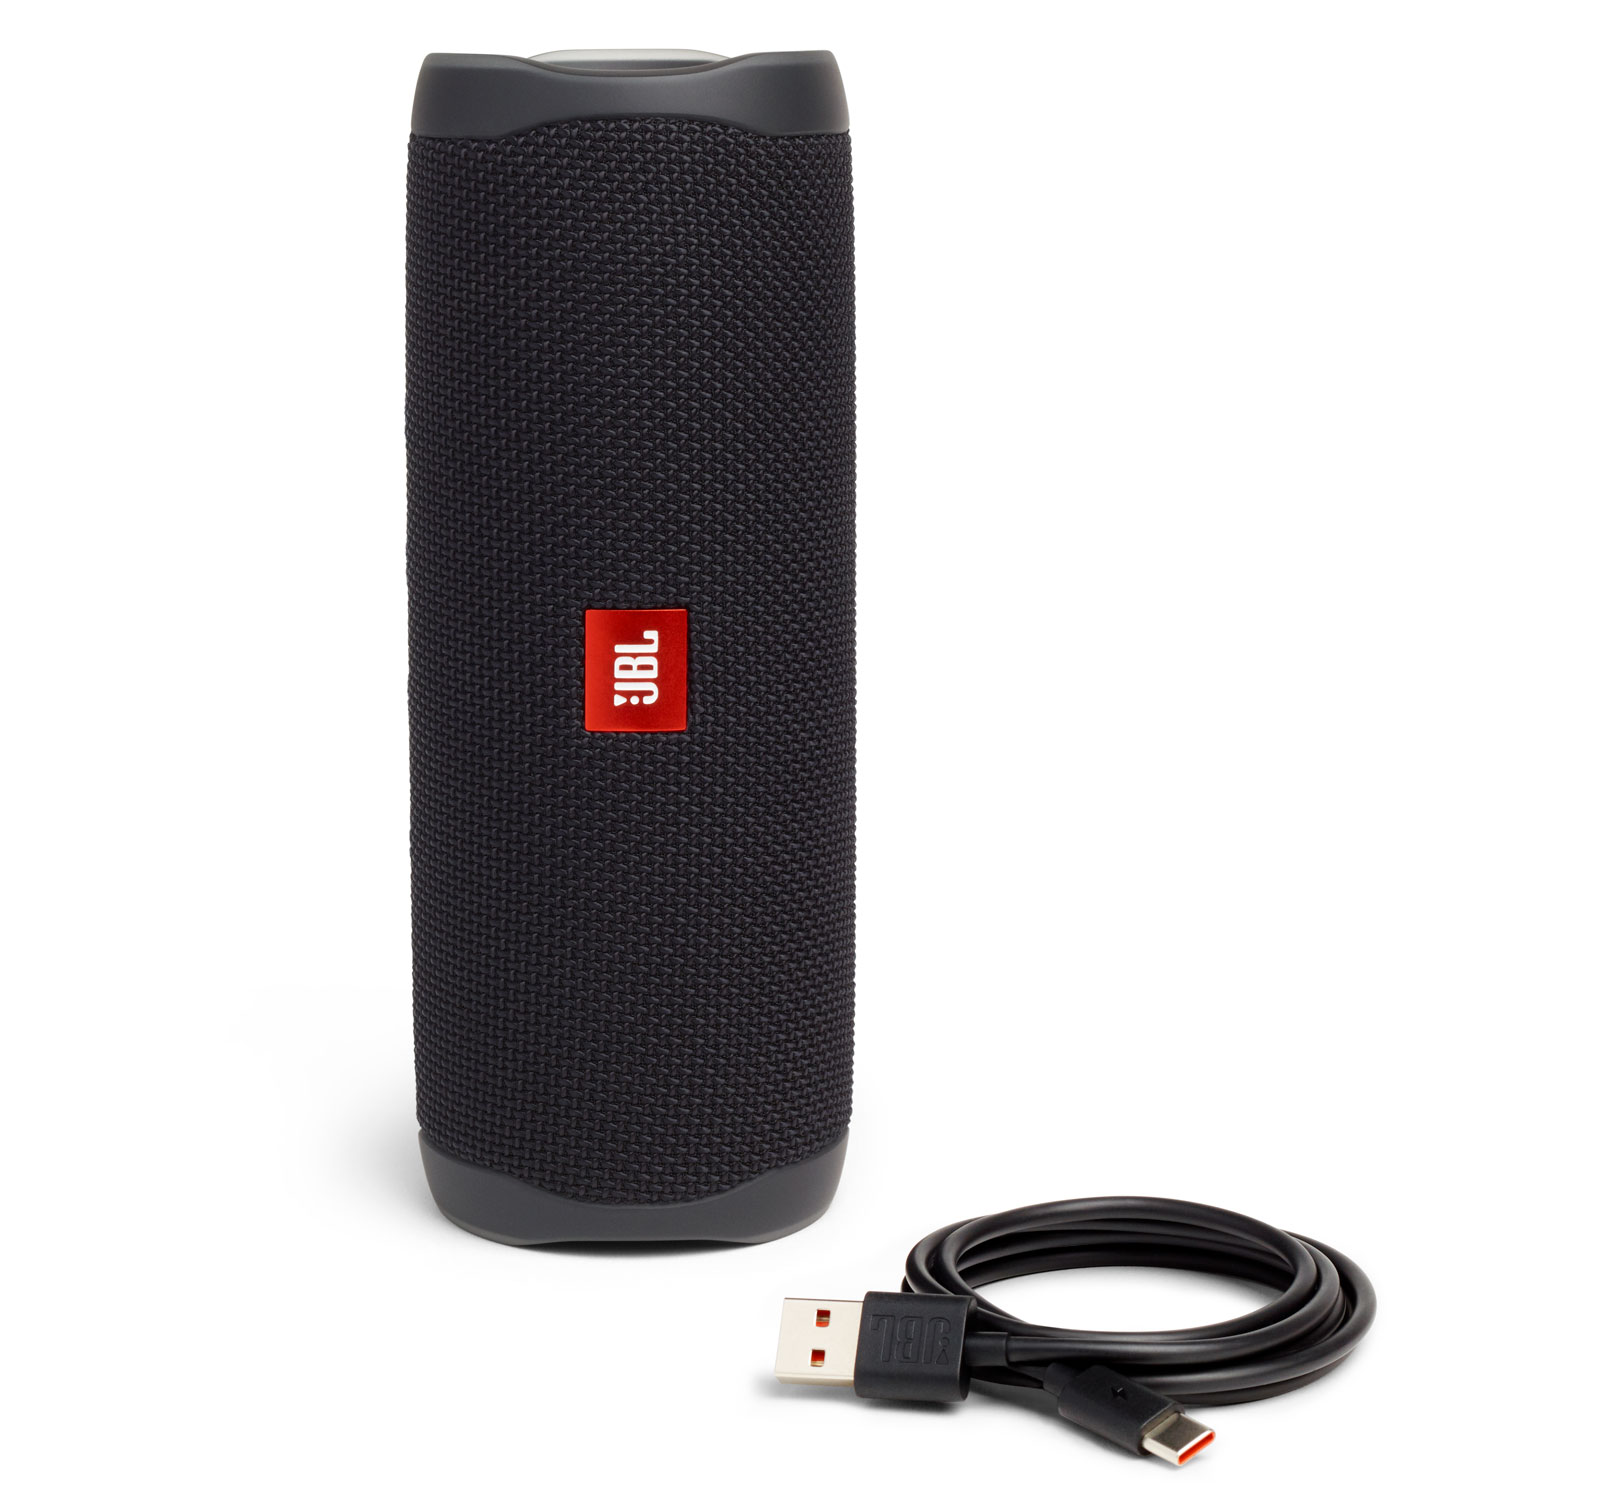 JBL Portable Bluetooth Speaker Pair with Waterproof, Black, JBLFLIP5BLKAM-PR - image 2 of 7